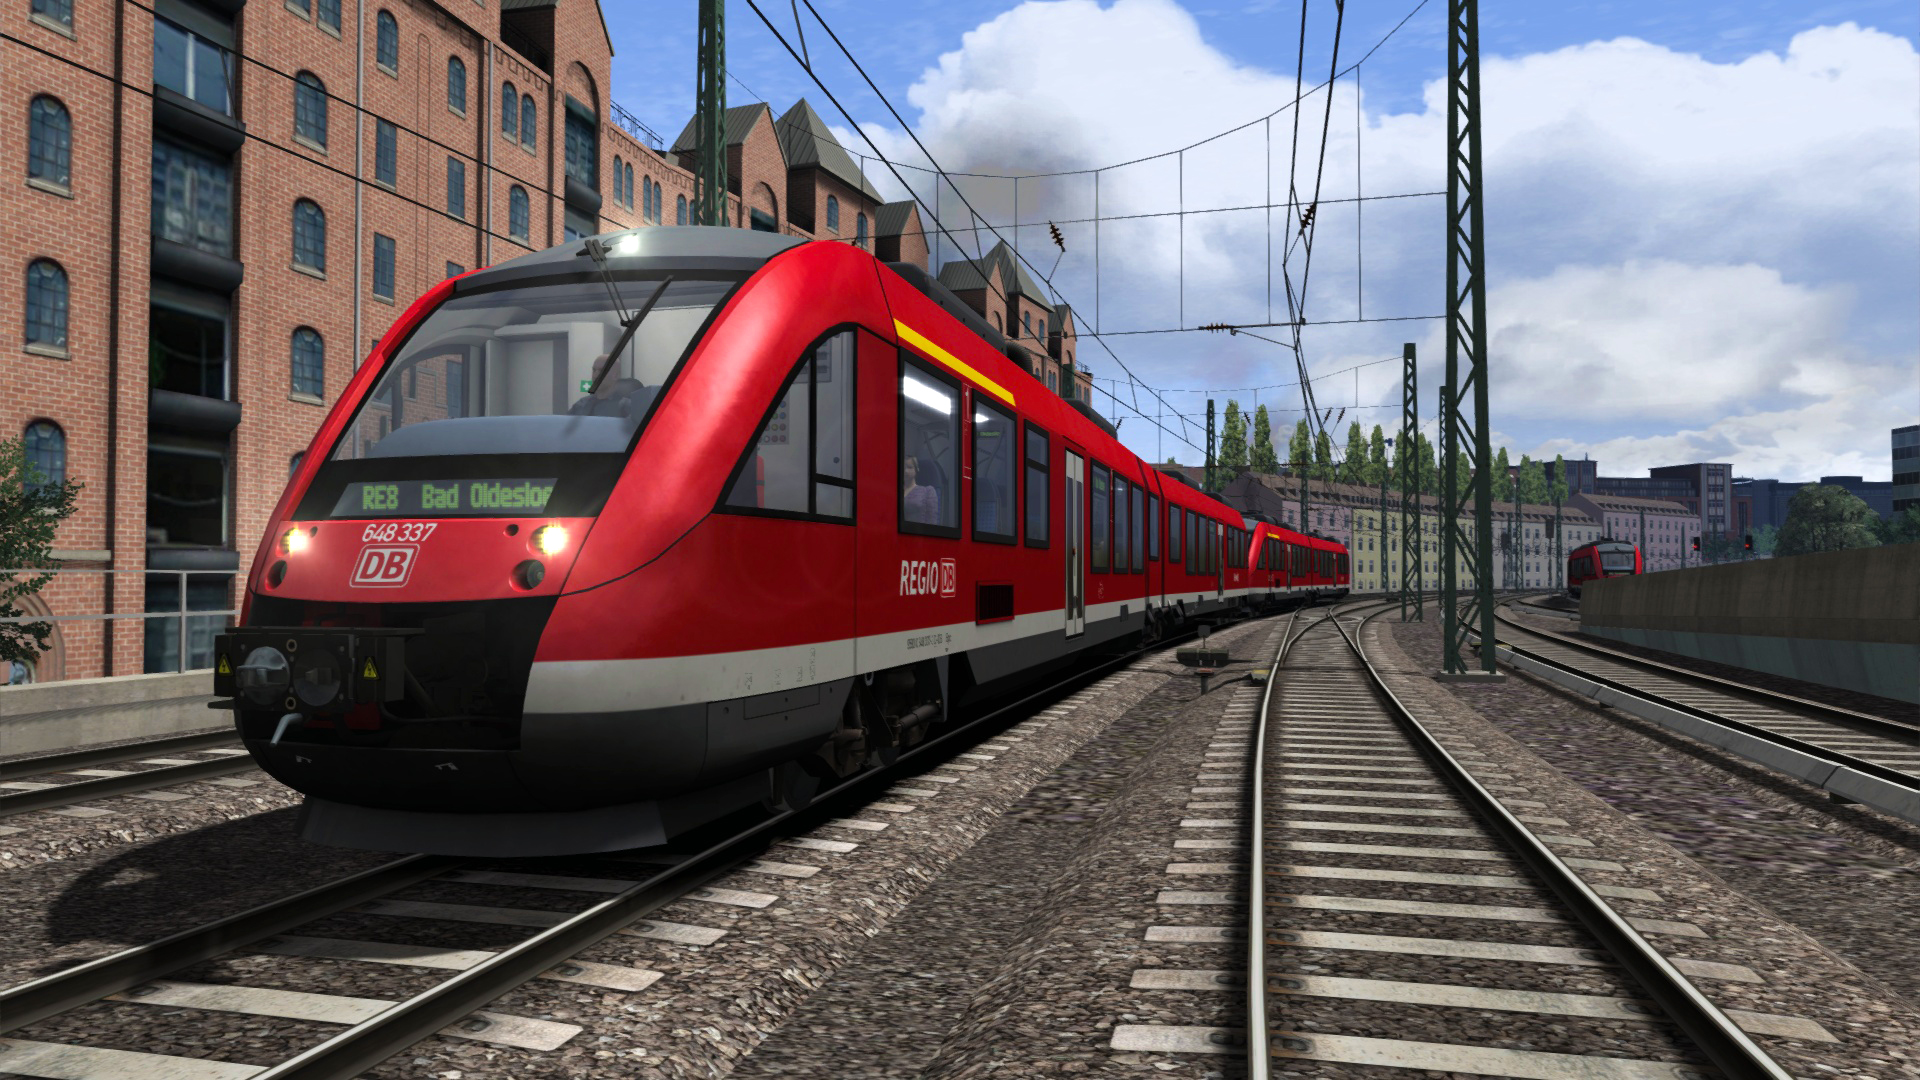 Train Simulator Classic - DB BR 648 Loco Add-On DLC Steam CD Key 0.43$